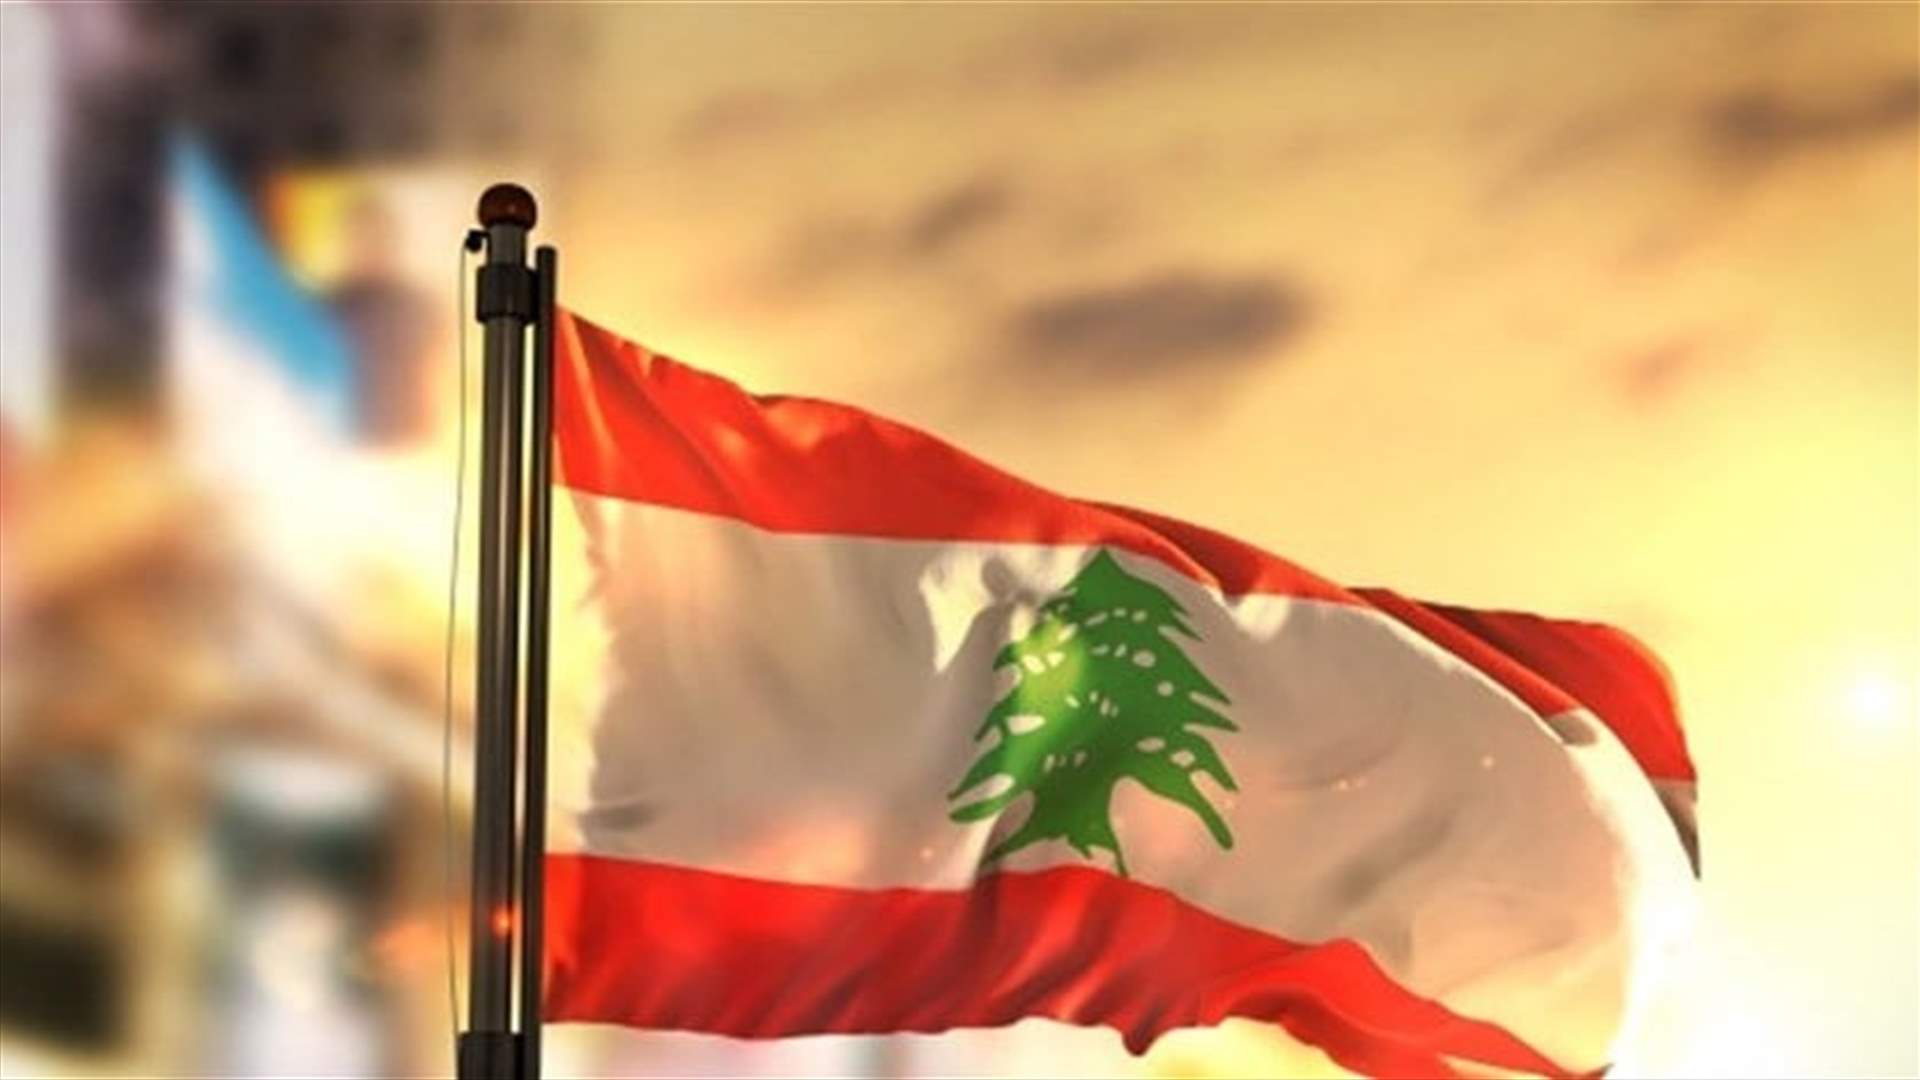 اتصالات غير مباشرة بين السعودية وايران حول الملف اللبناني (الأخبار)